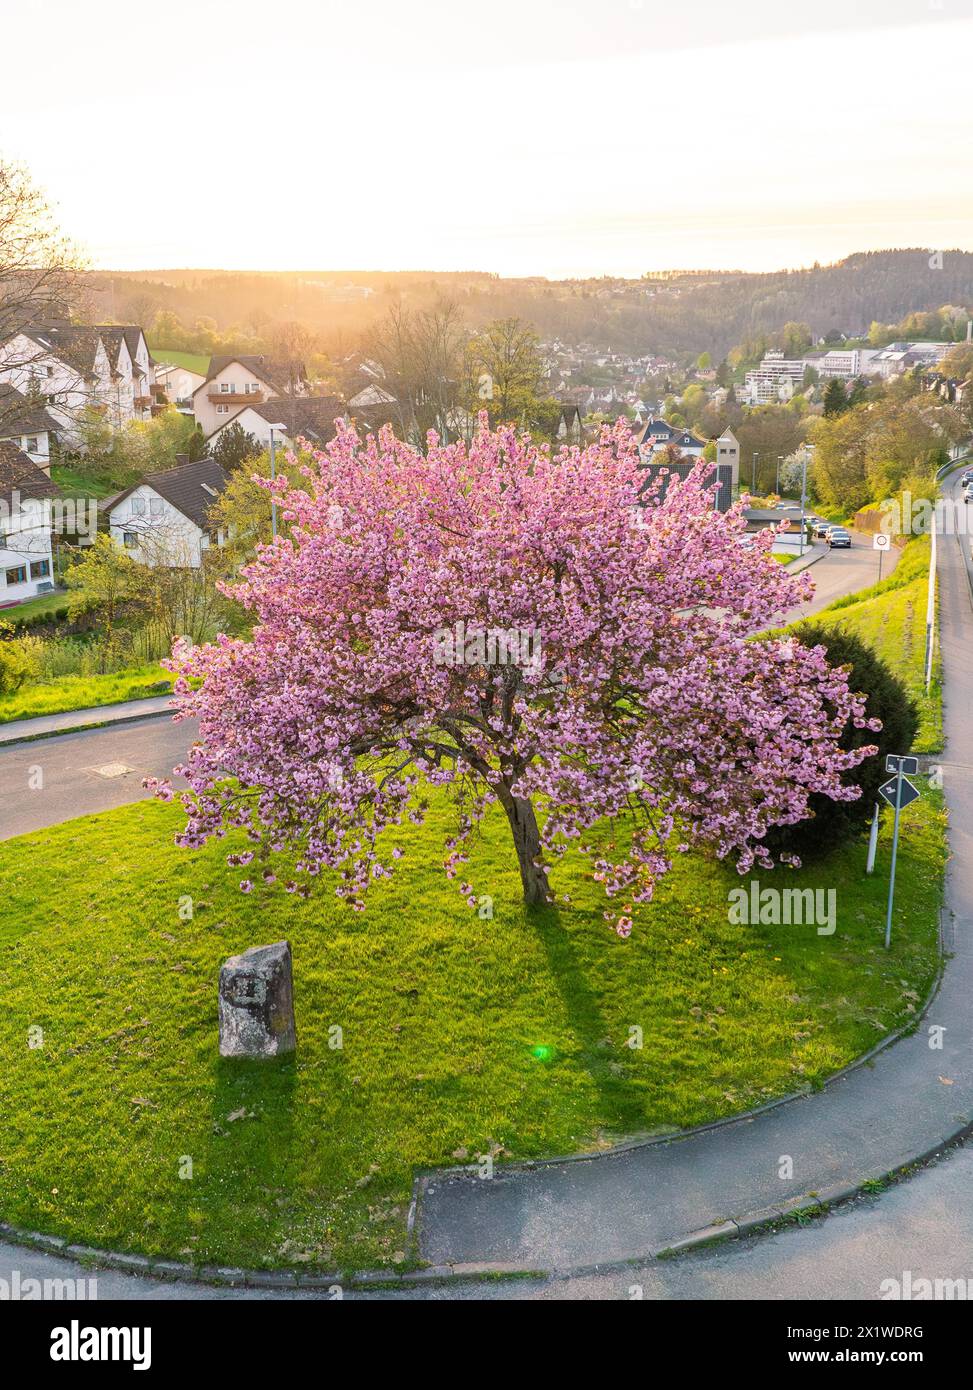 Une scène paisible avec un arbre en fleurs sur un coin de rue pendant le crépuscule dans une banlieue, printemps, Calw, Forêt Noire, Allemagne Banque D'Images